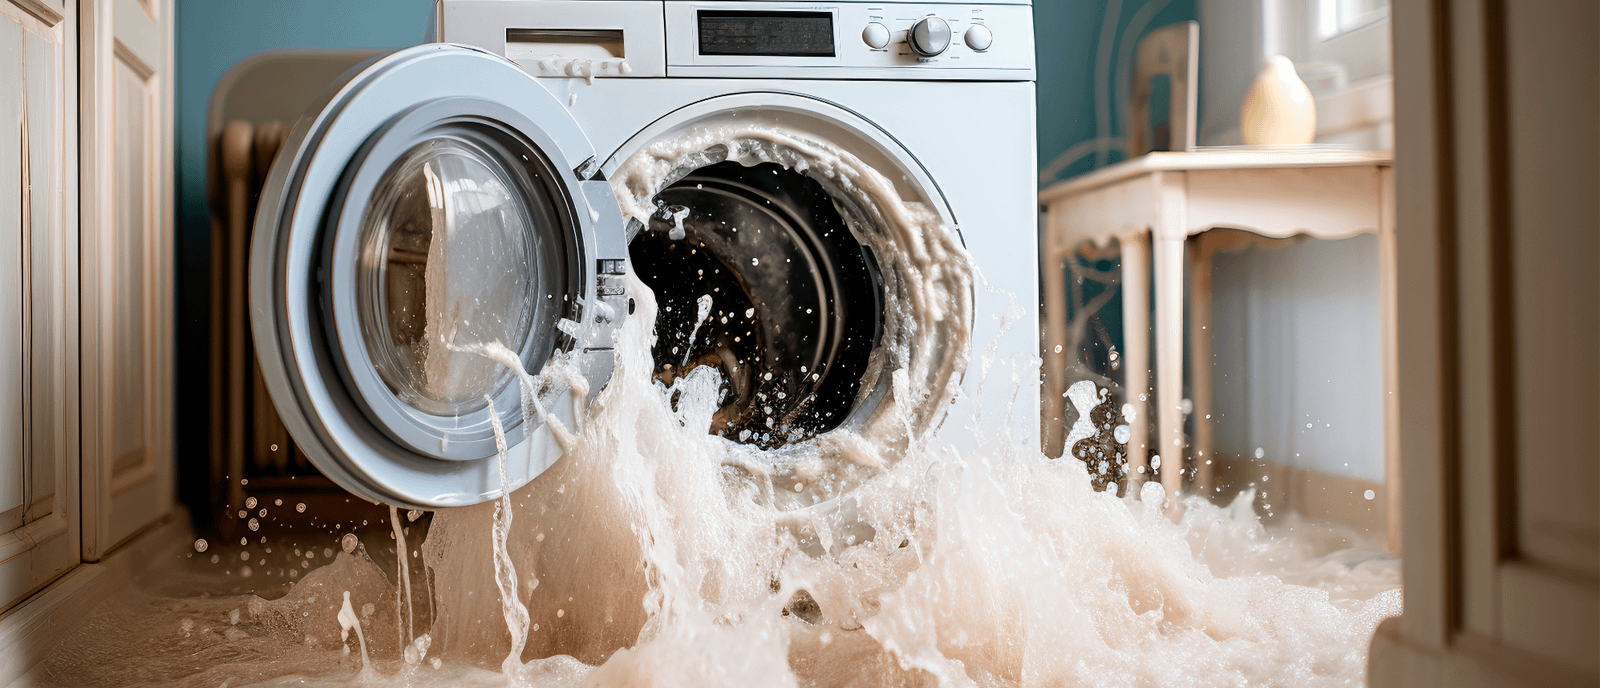 Washing machine bursting with water